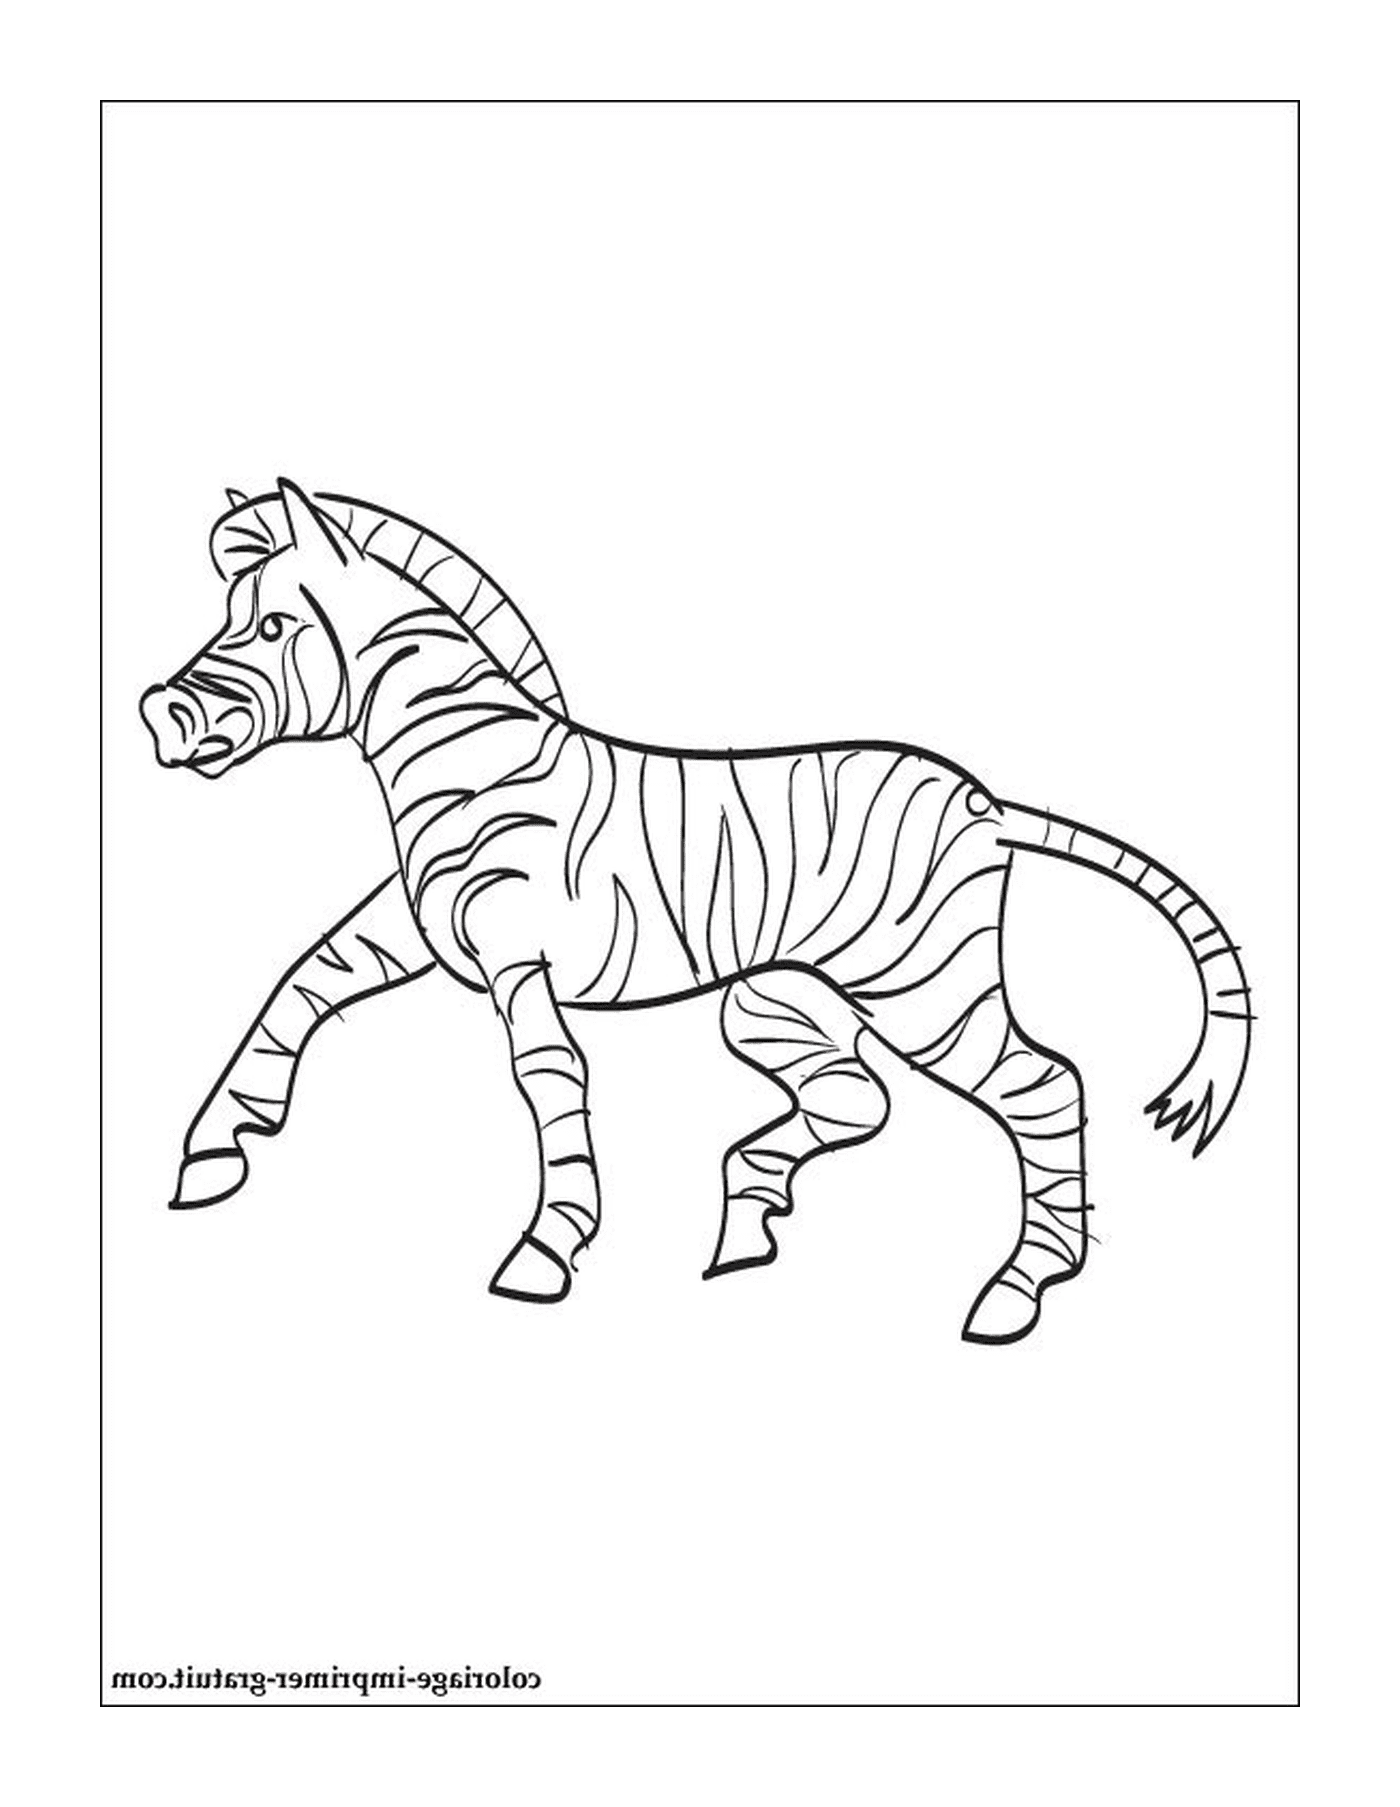  Una zebra danzante 